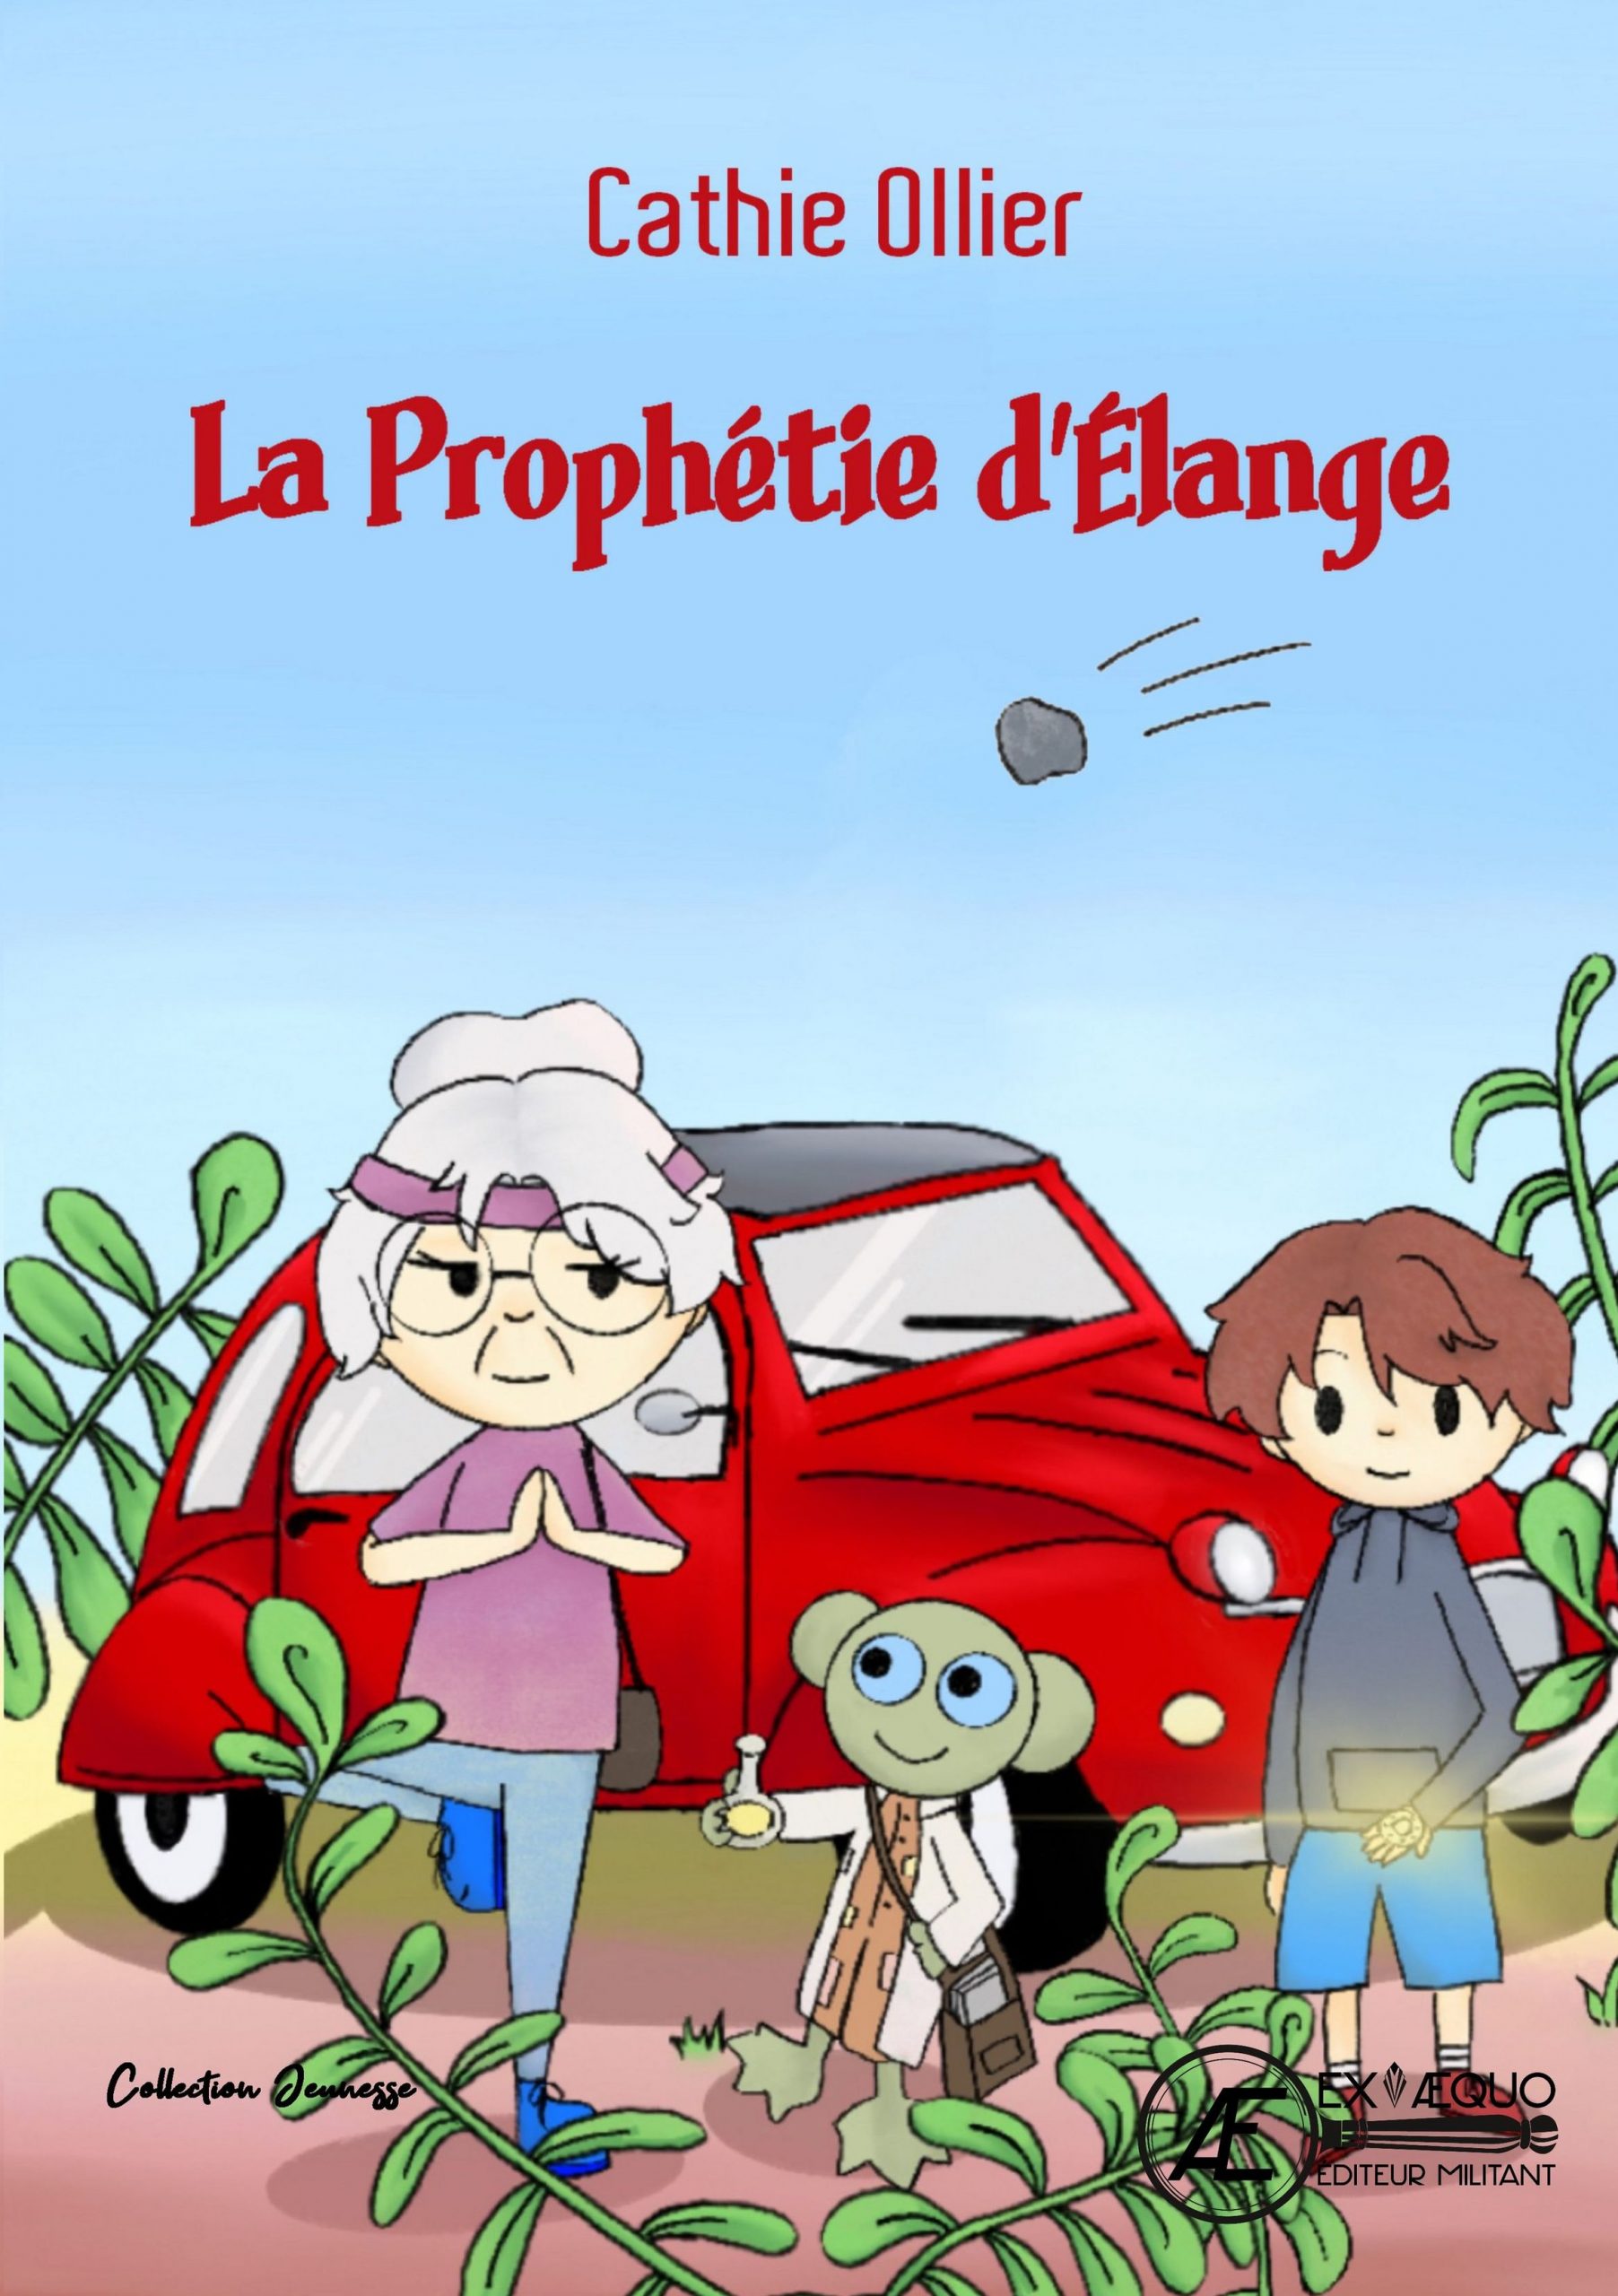 You are currently viewing La prophétie d’Elange